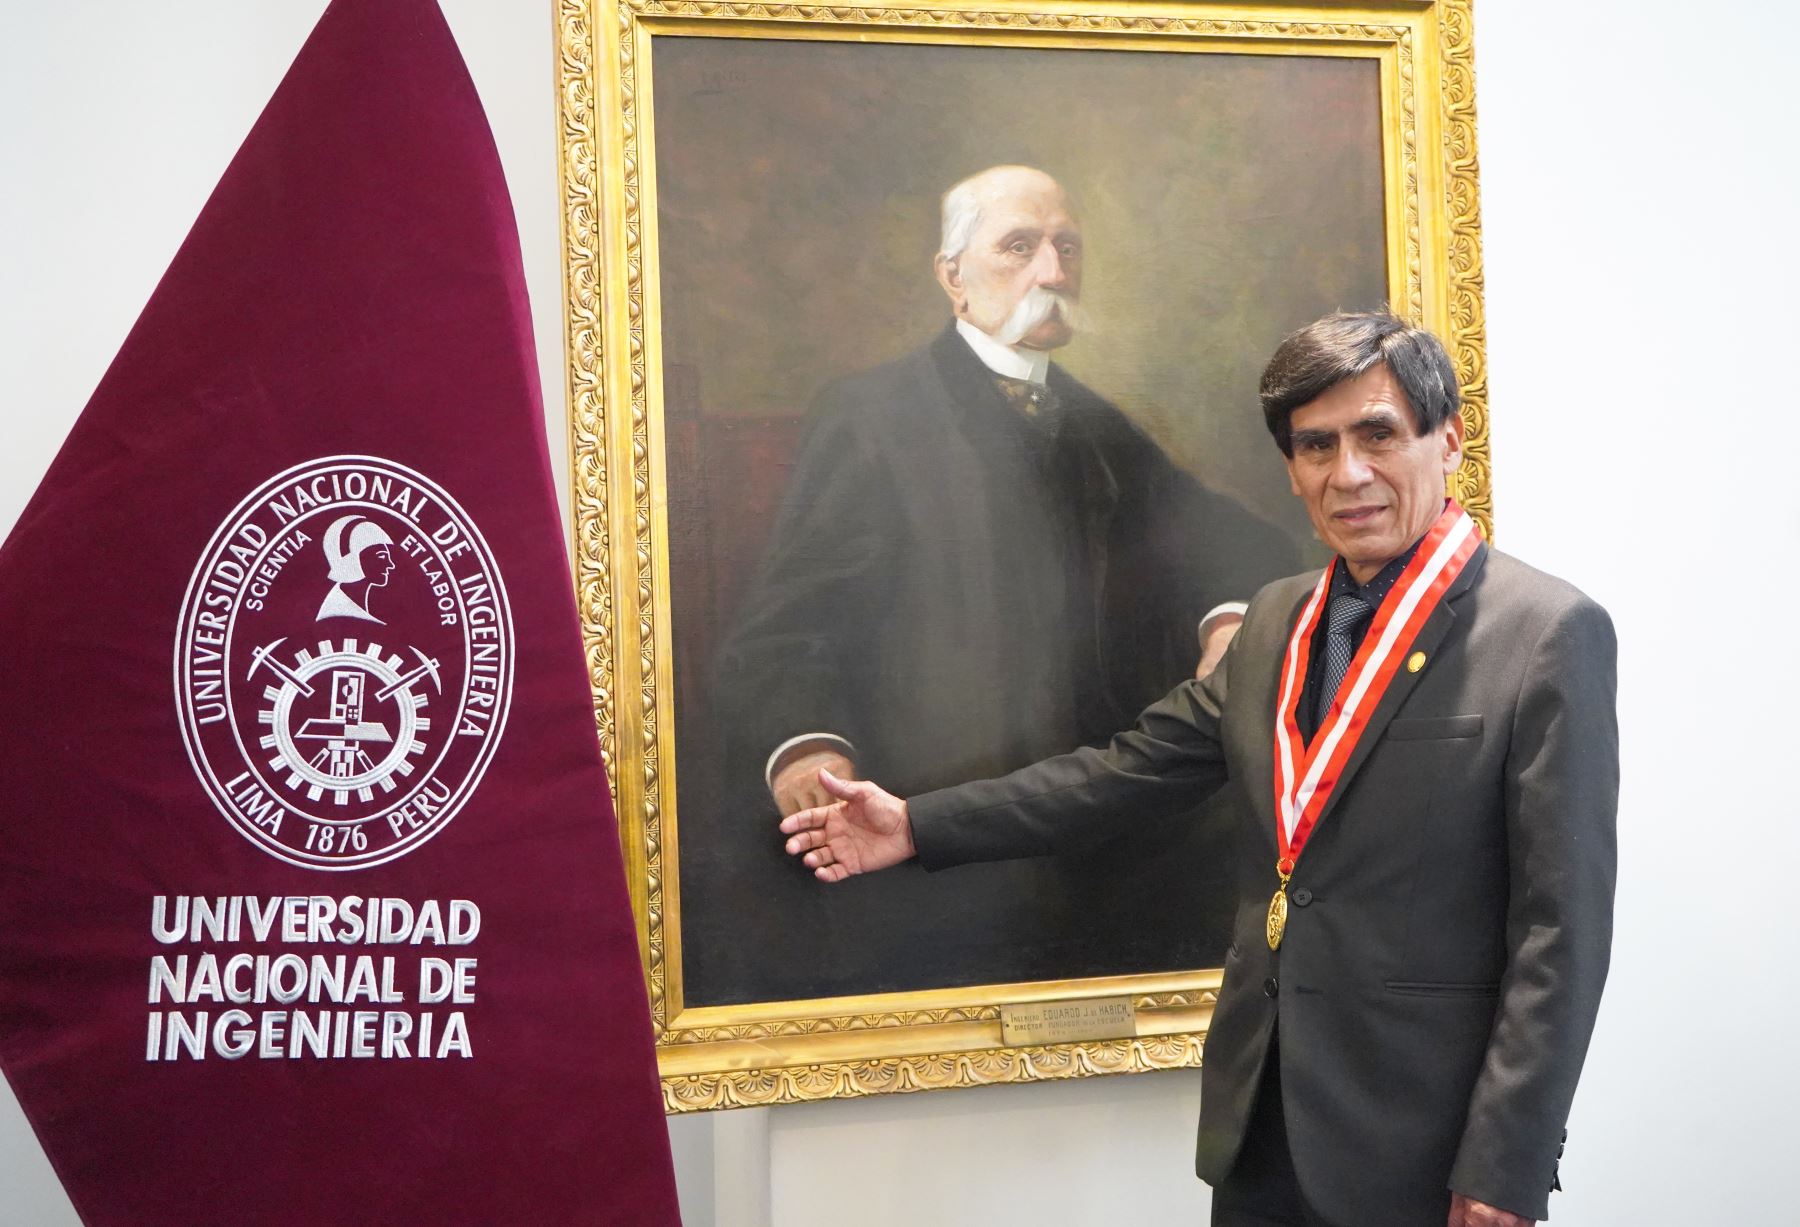 El doctor Pedro Canales García brinda detalles sobre los aportes e investigaciones científicas y tecnológicas que han realizado en el marco del Bicentenario de la Independencia del Perú en la Universidad Nacional de Ingeniería.